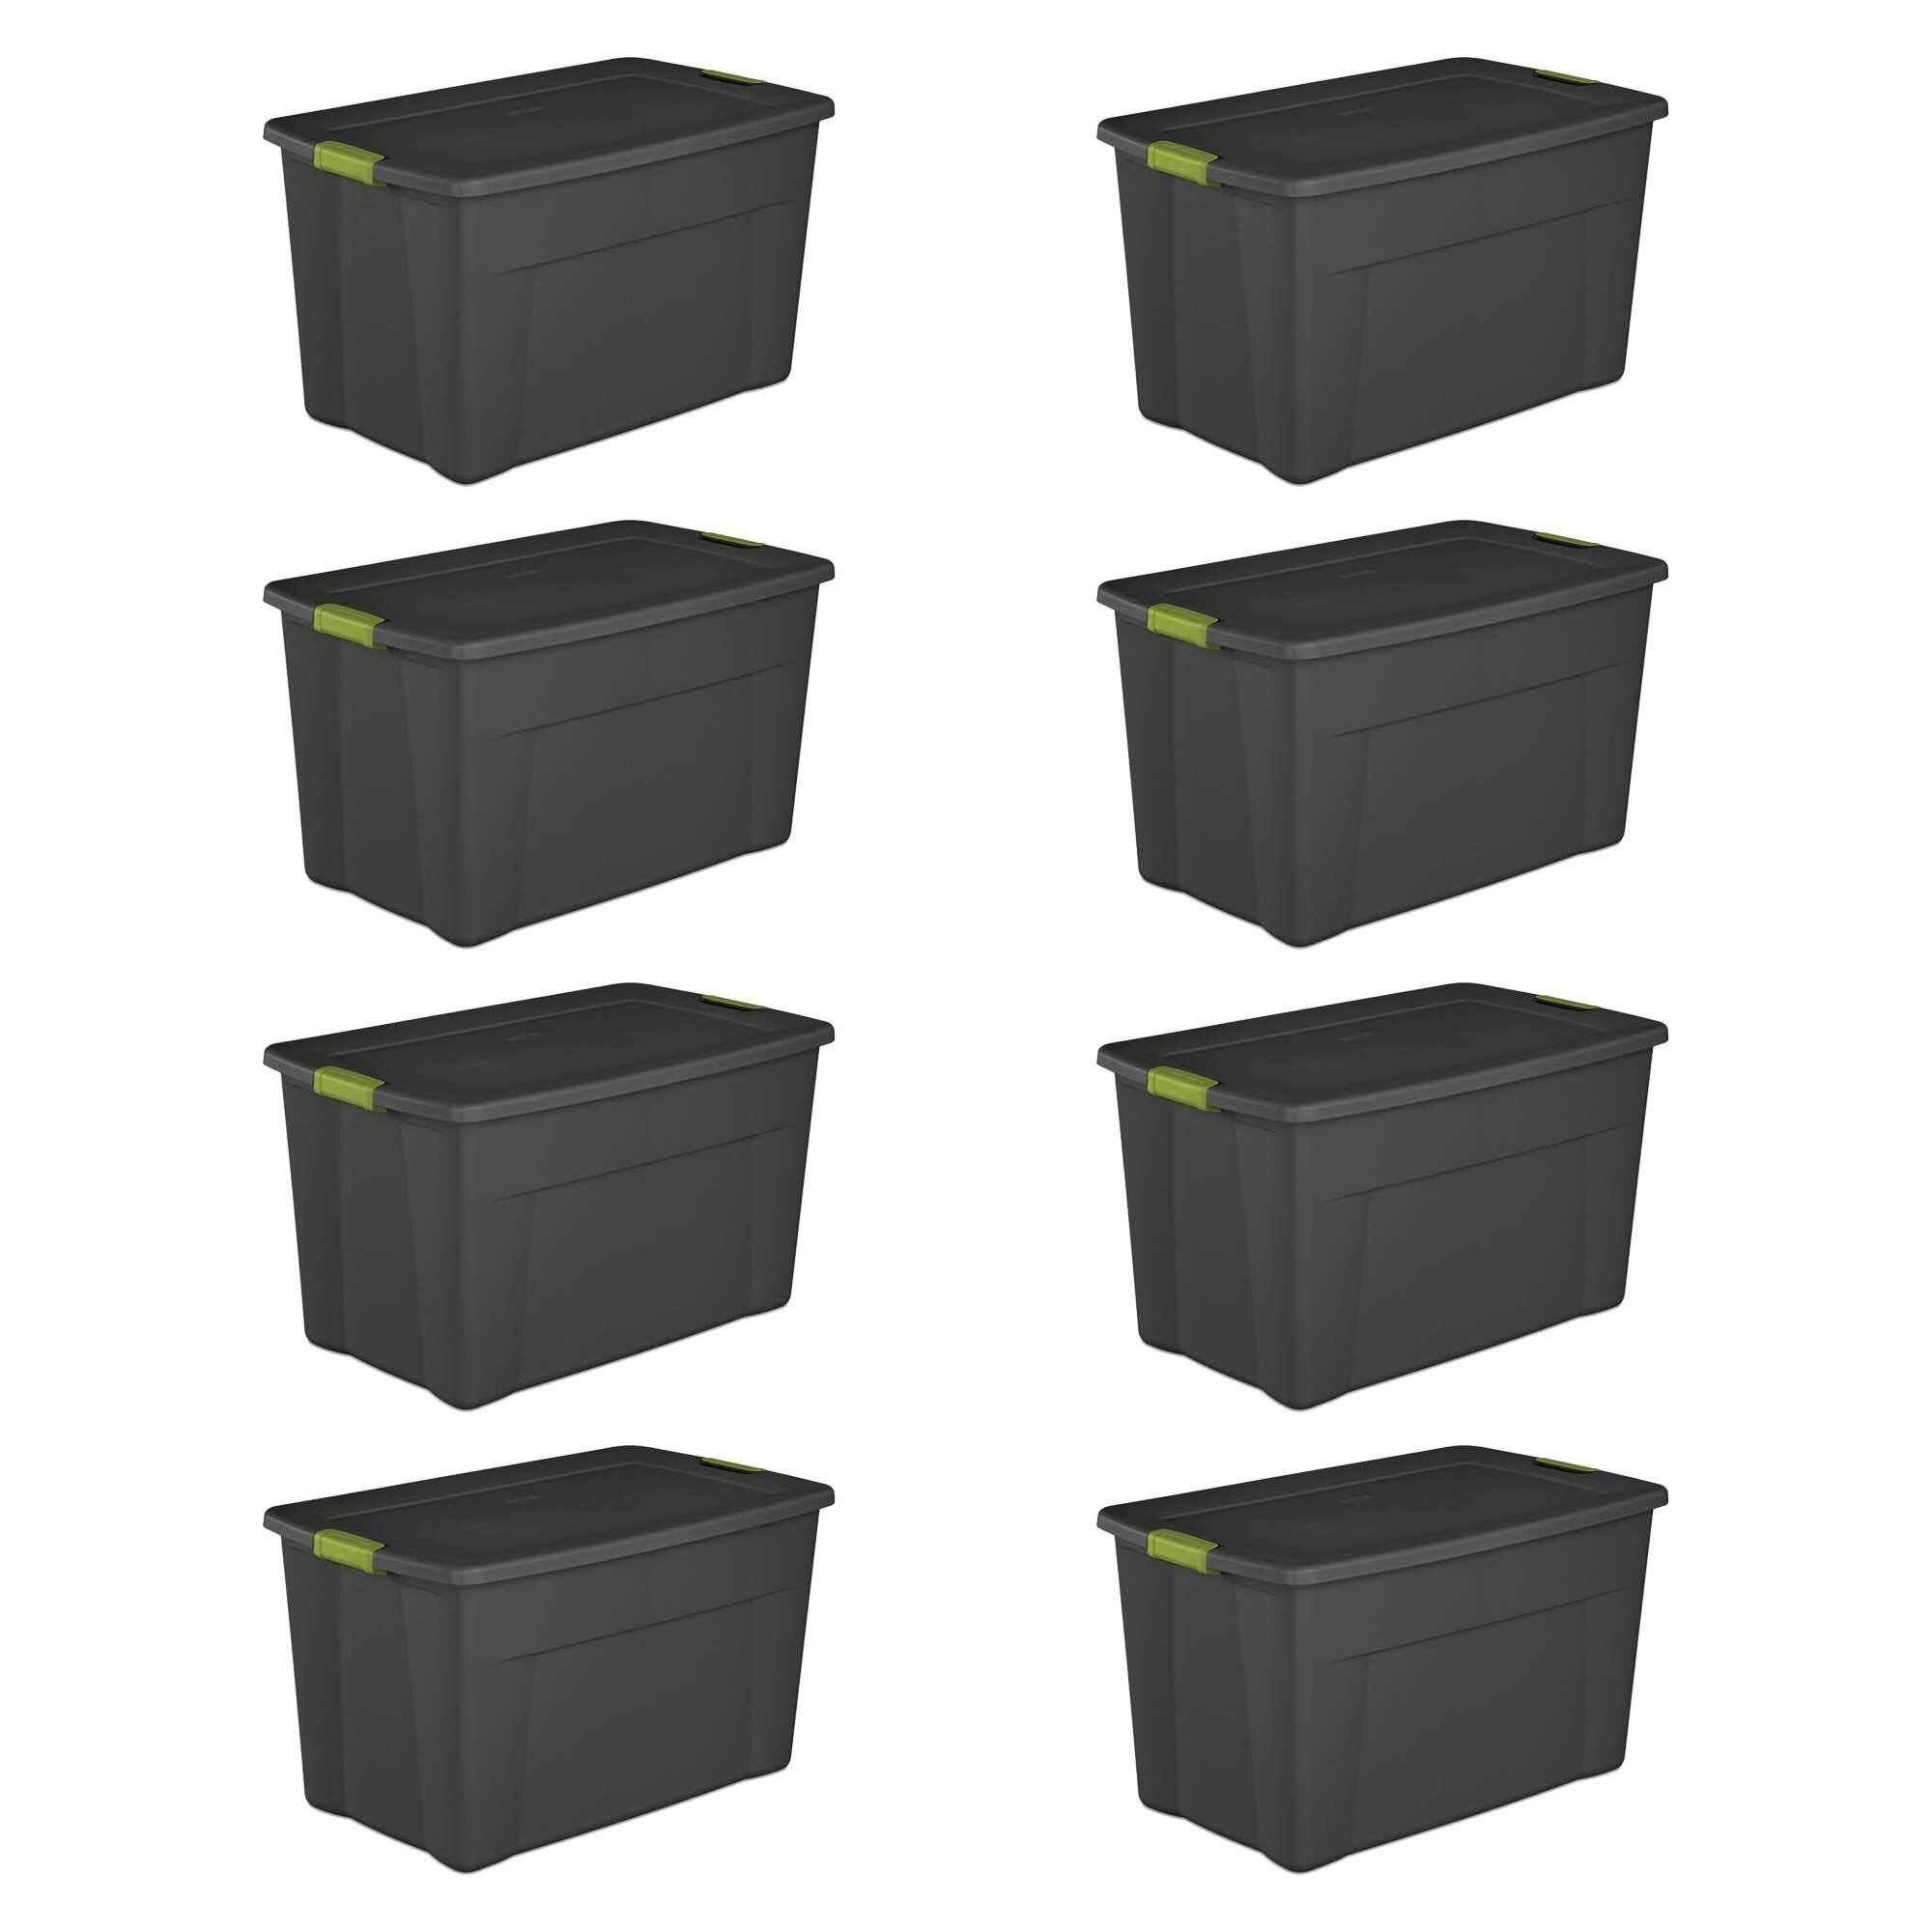 Sterilite 18 Gallon Tote Box, Pack of 8 - Gray for sale online